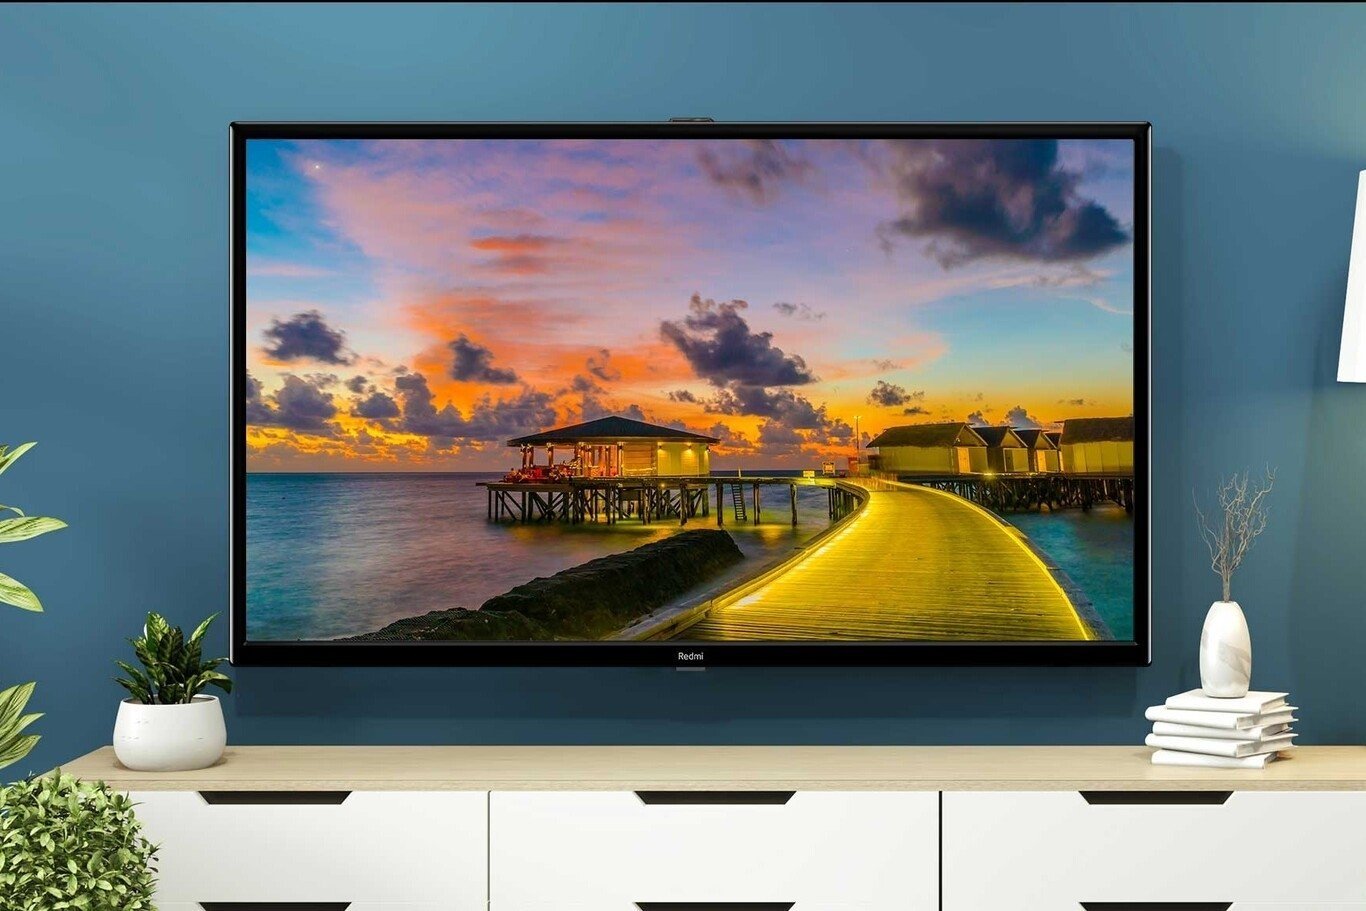 Nuevas Redmi Smart TV de 32 y 43 pulgadas